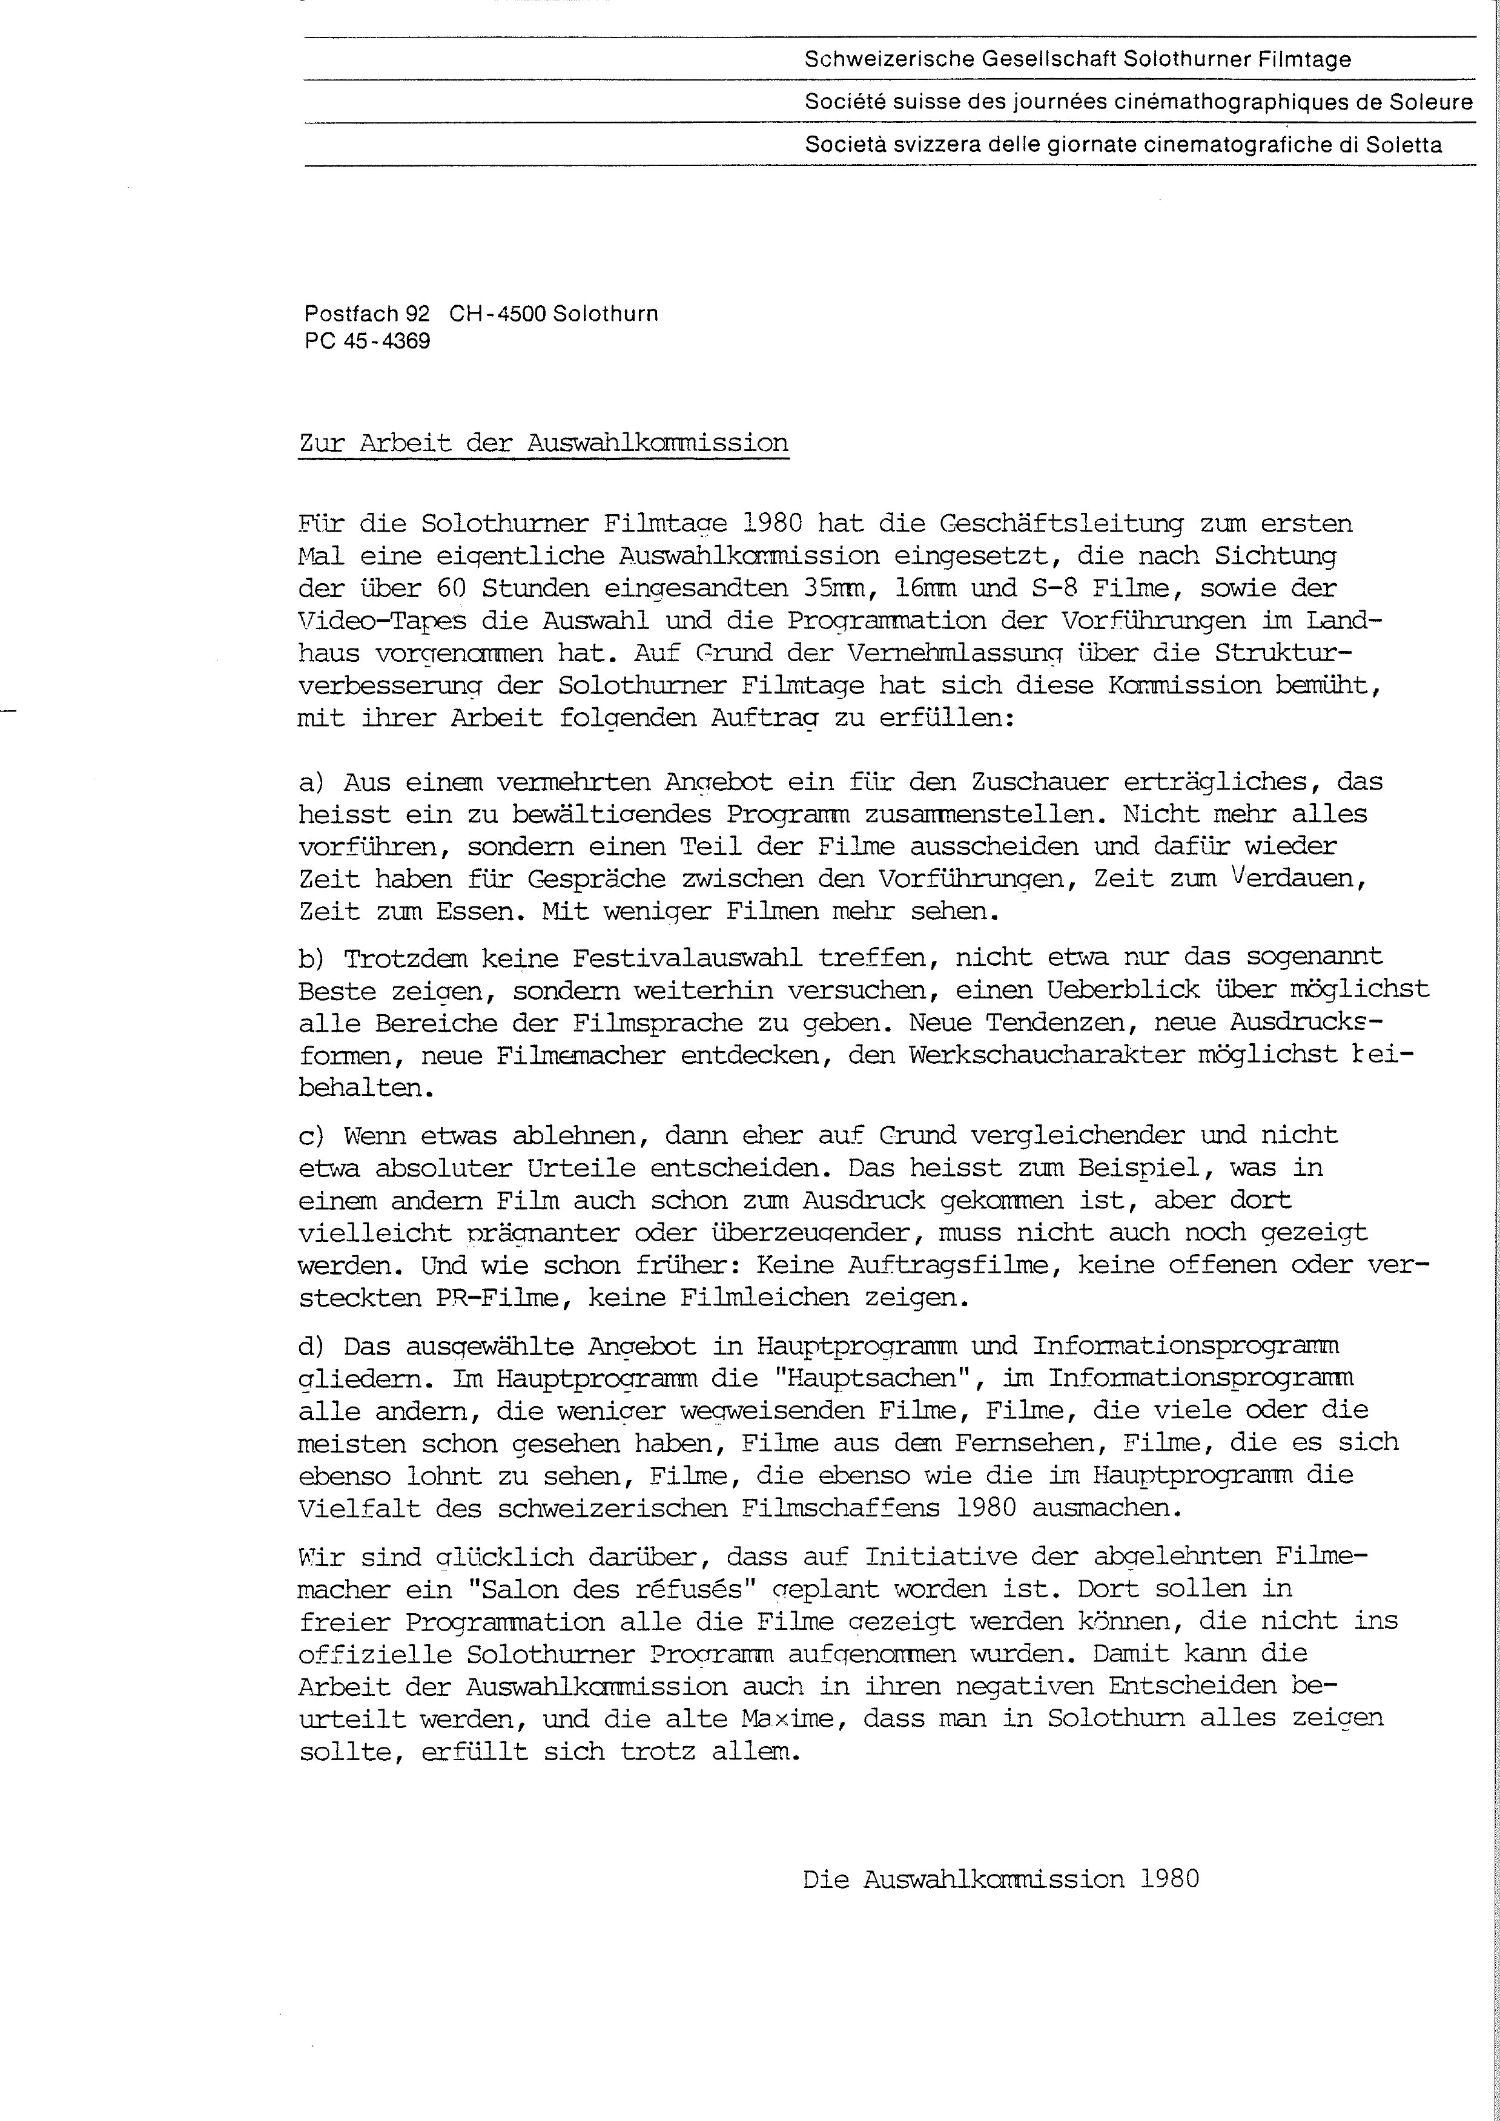 A propos du travail de la commission de sélection, 1980